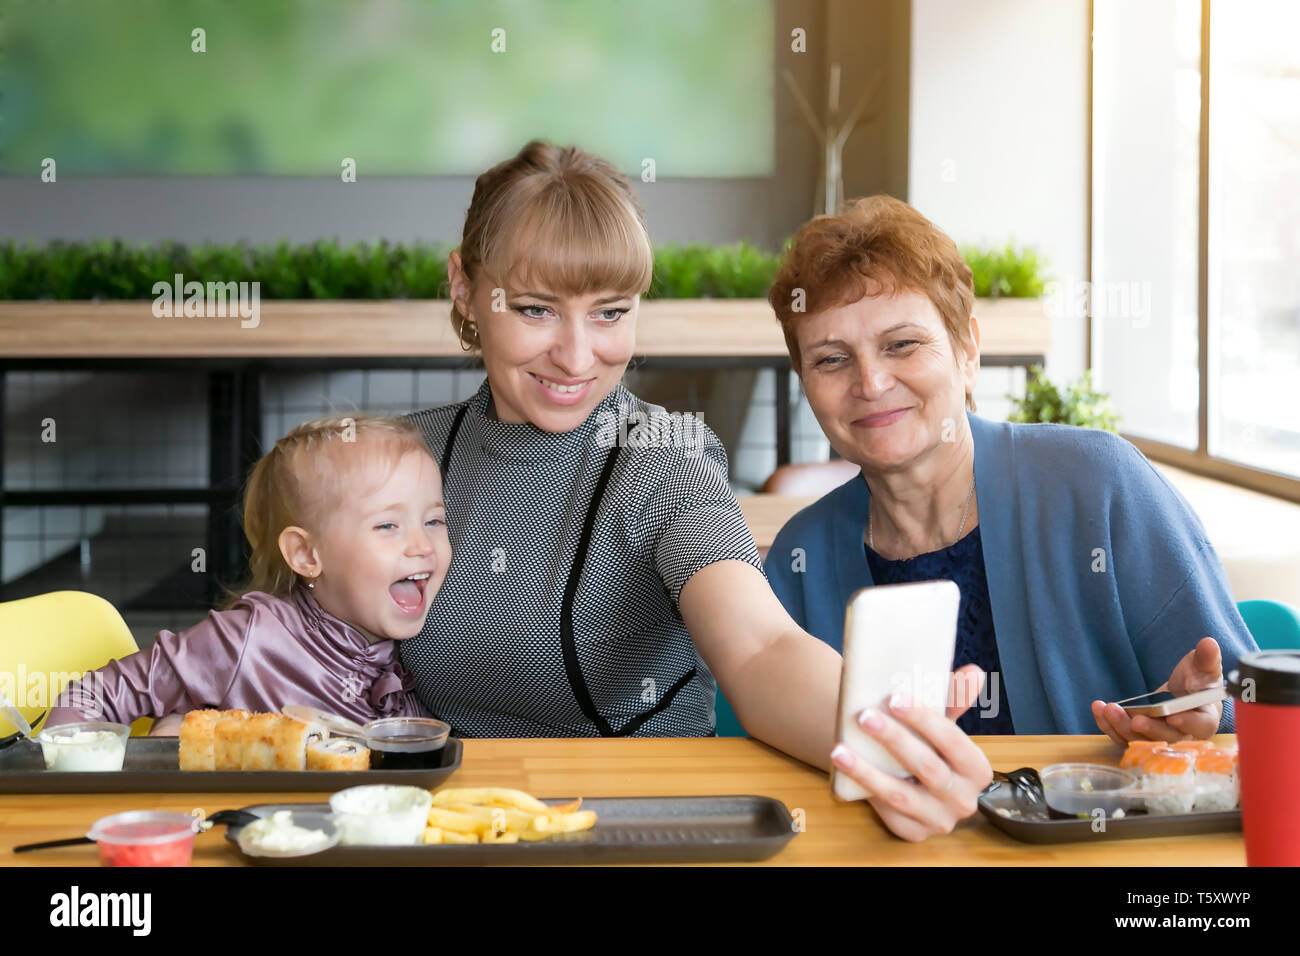 Eine junge Frau nimmt ein Bild von sich selbst auf dem Smartphone mit einer älteren Mutter und Tochter. Stockfoto